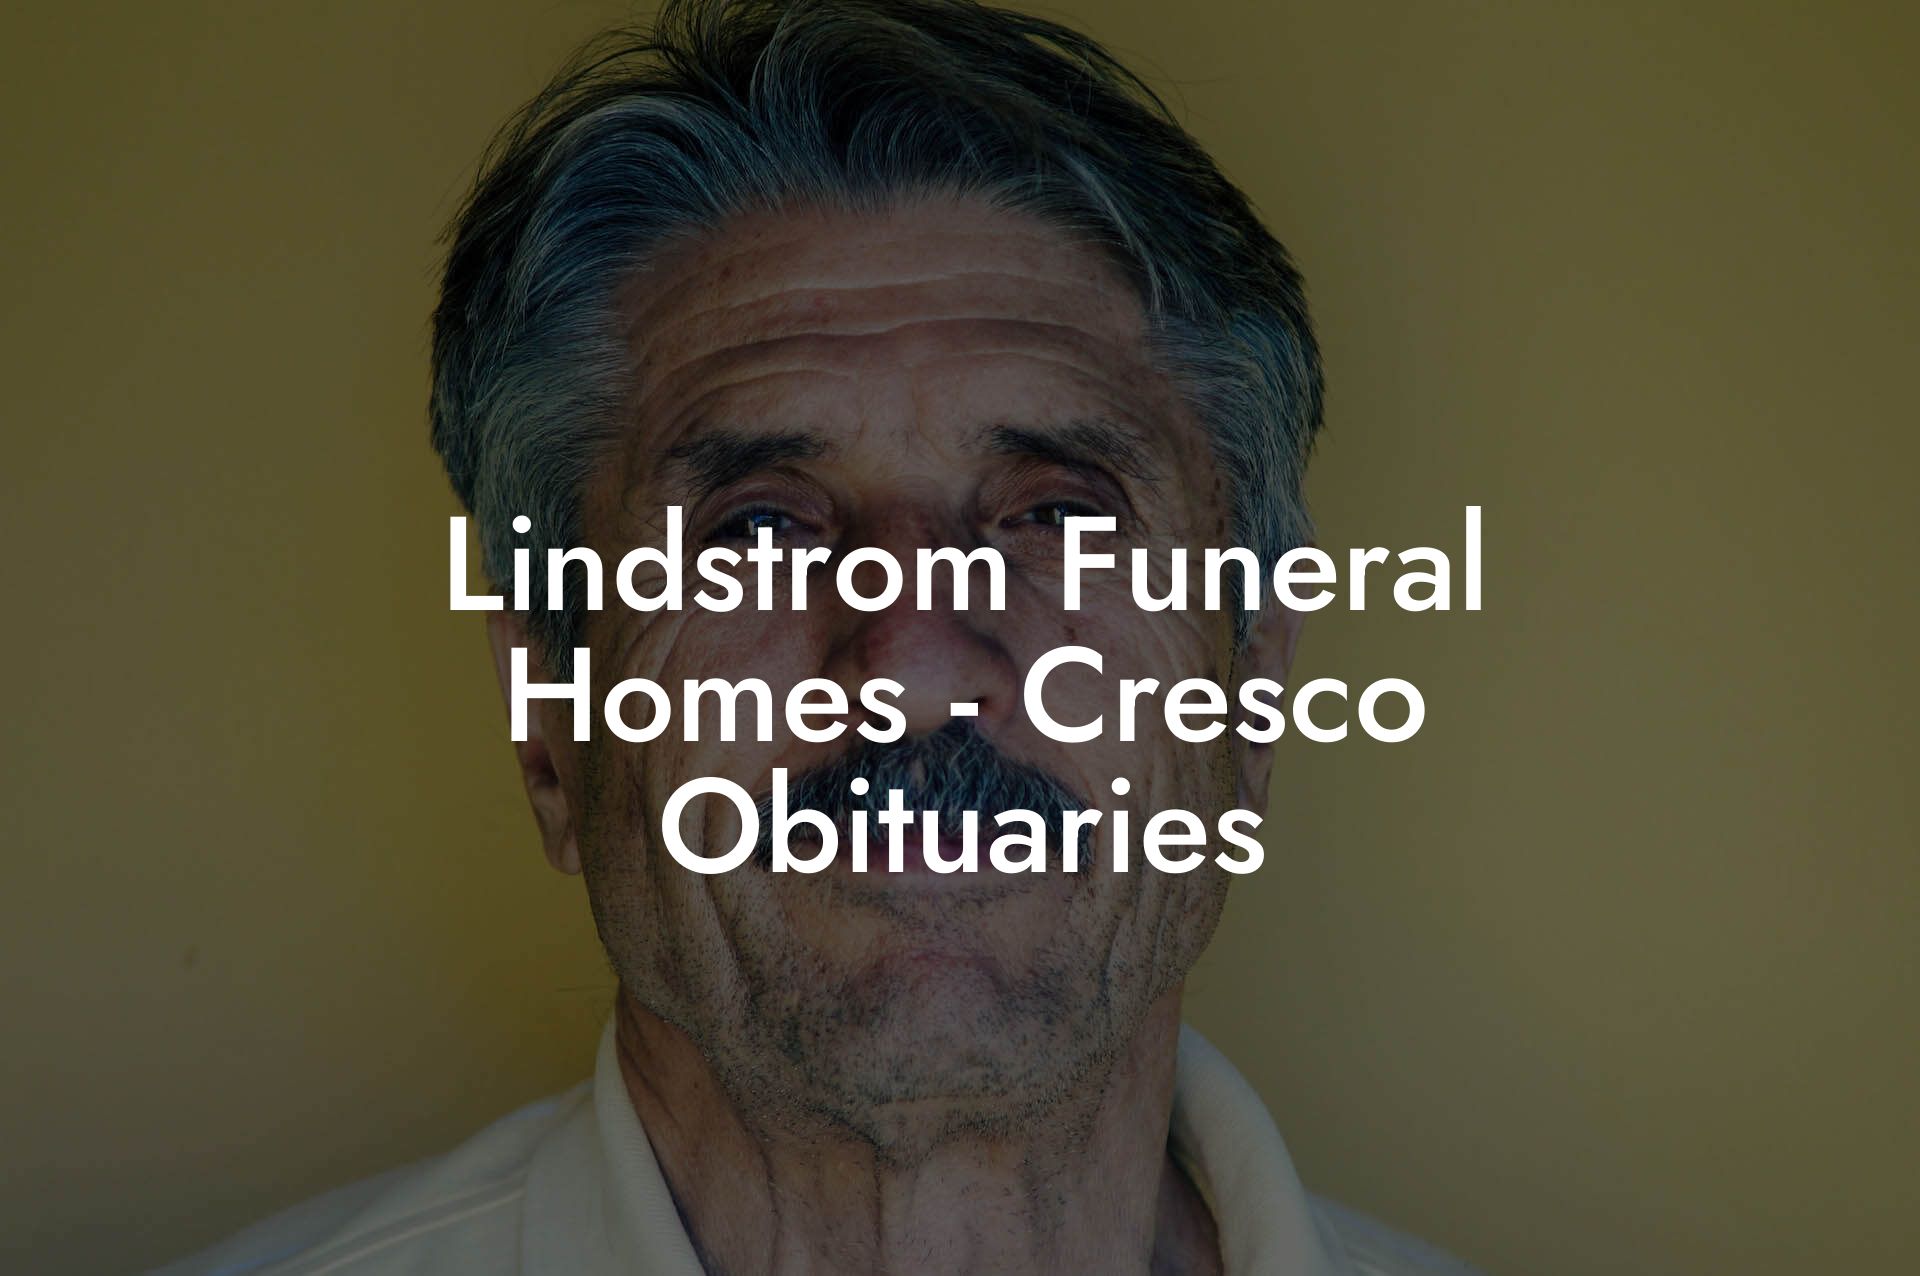 Lindstrom Funeral Homes - Cresco Obituaries